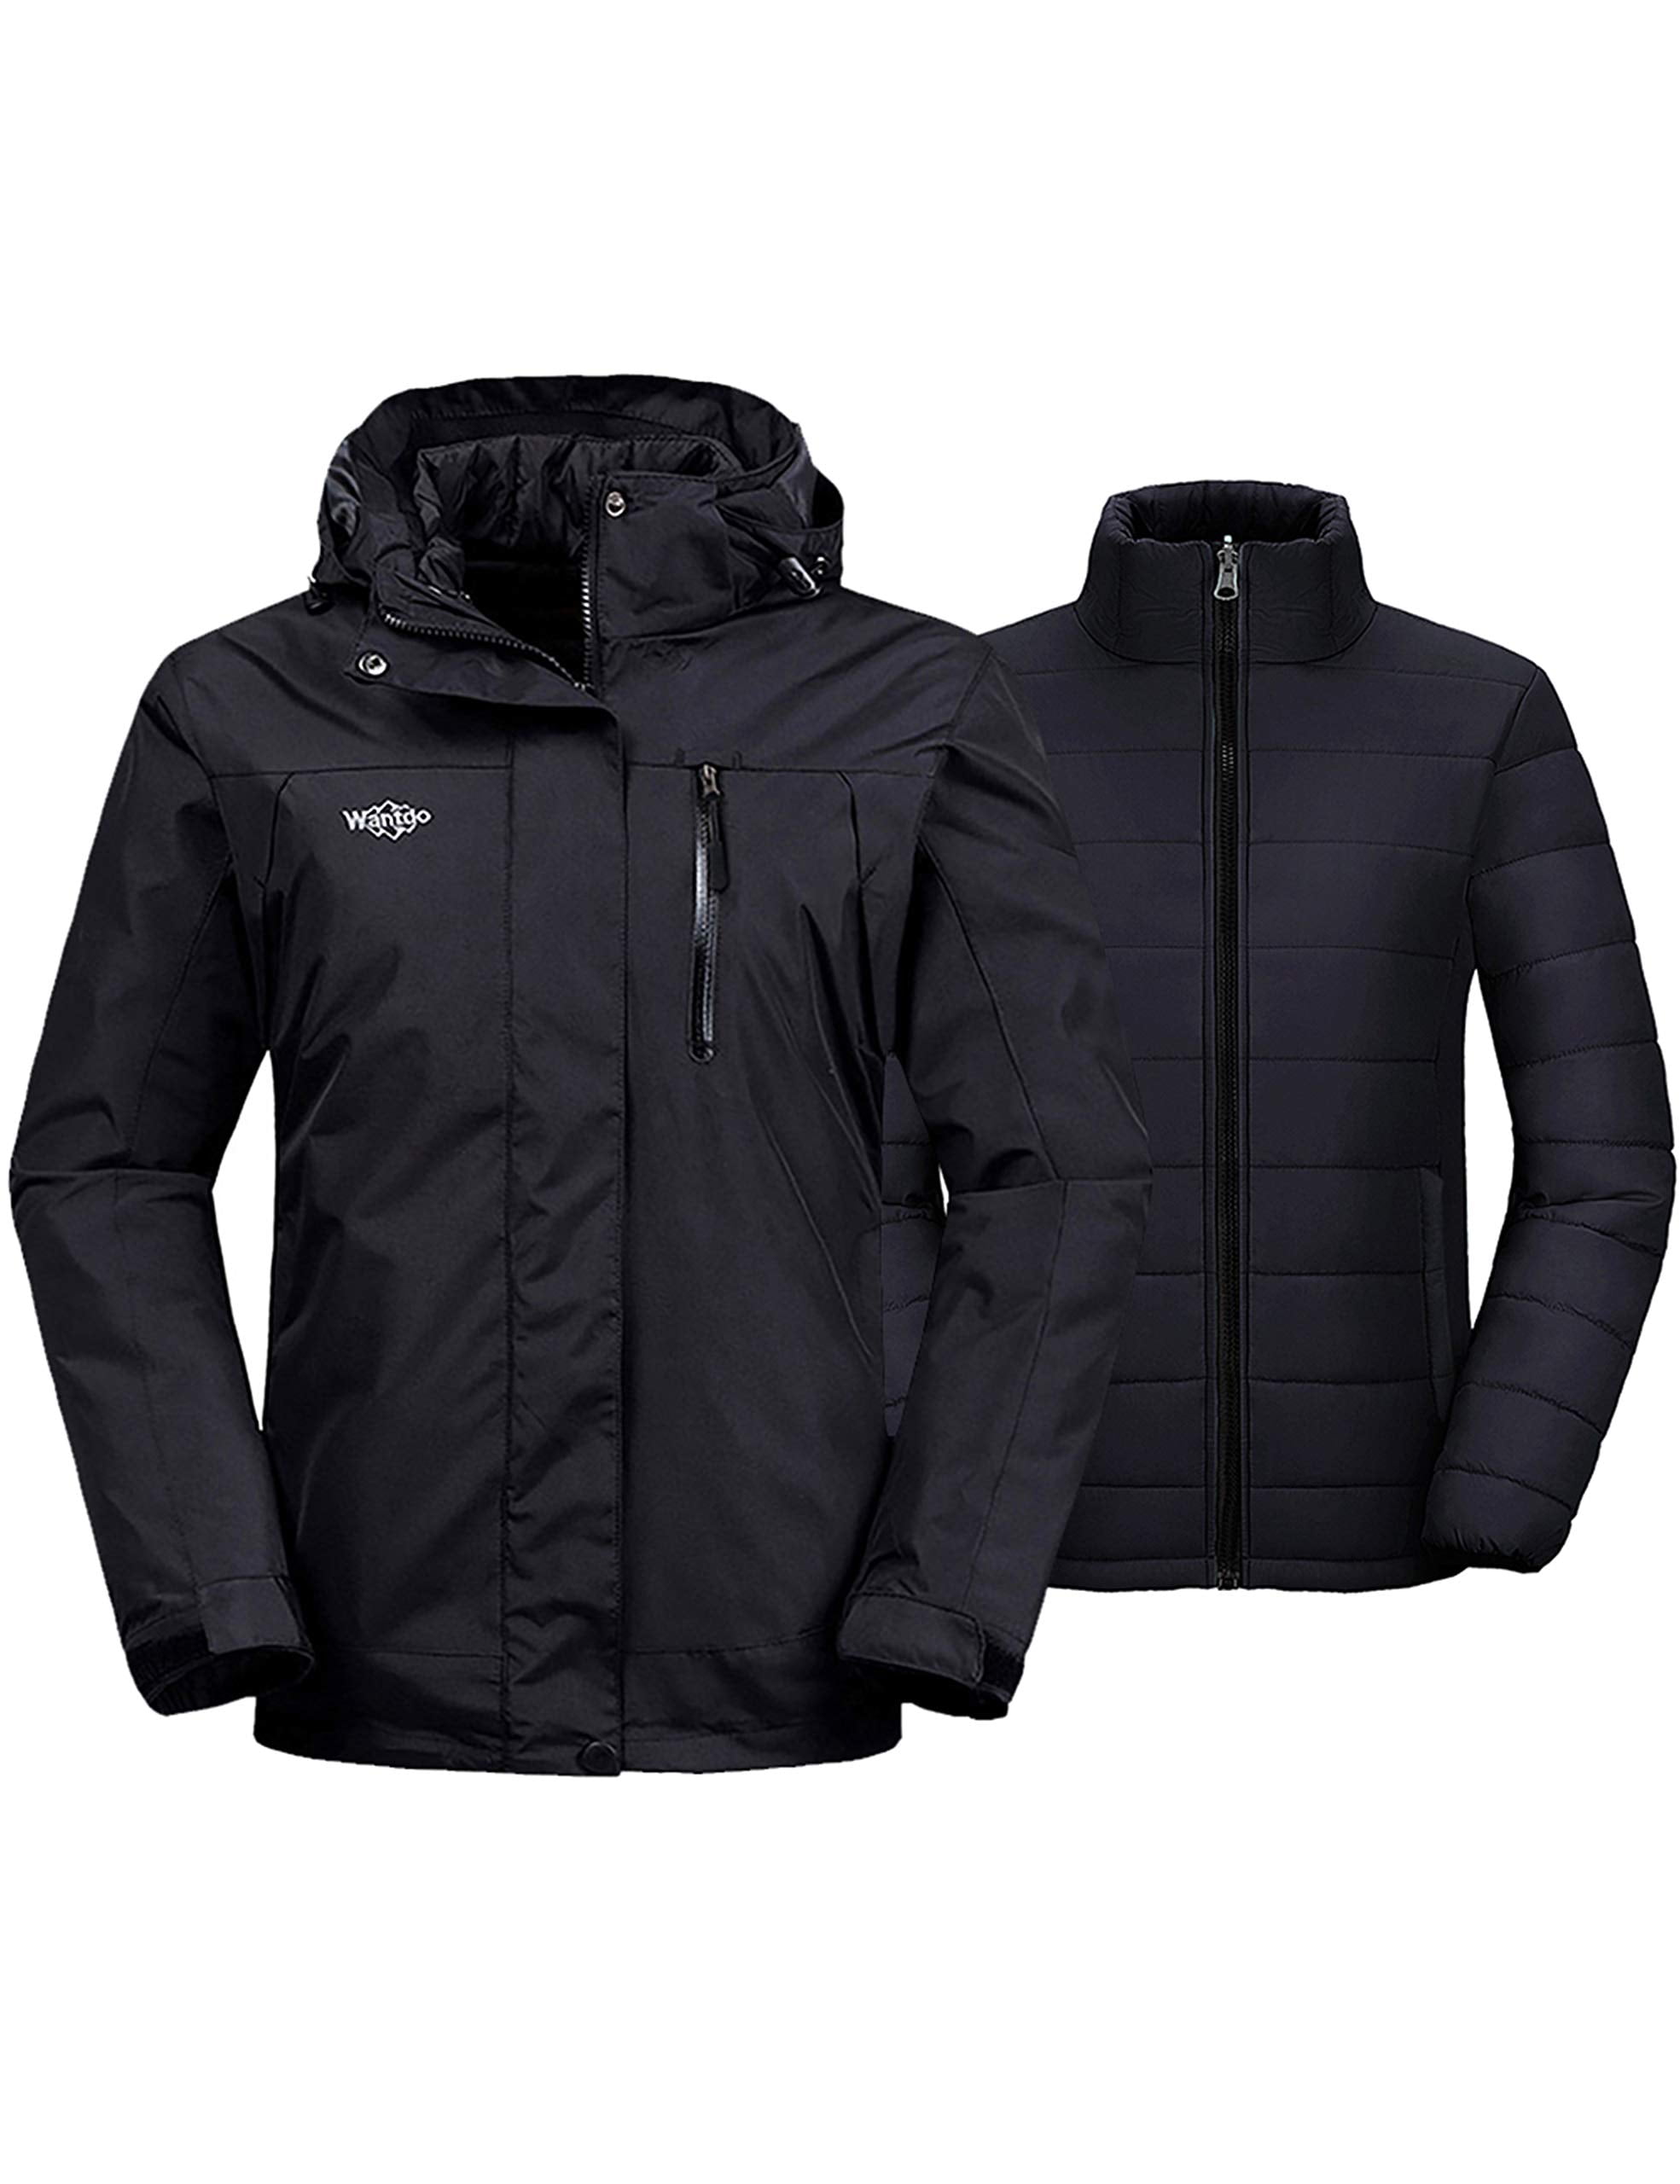 Wantdo Women's Waterproof Ski Jacket Warm Winter Snow Coat Windproof Snowboarding Jackets Insulated Parka 